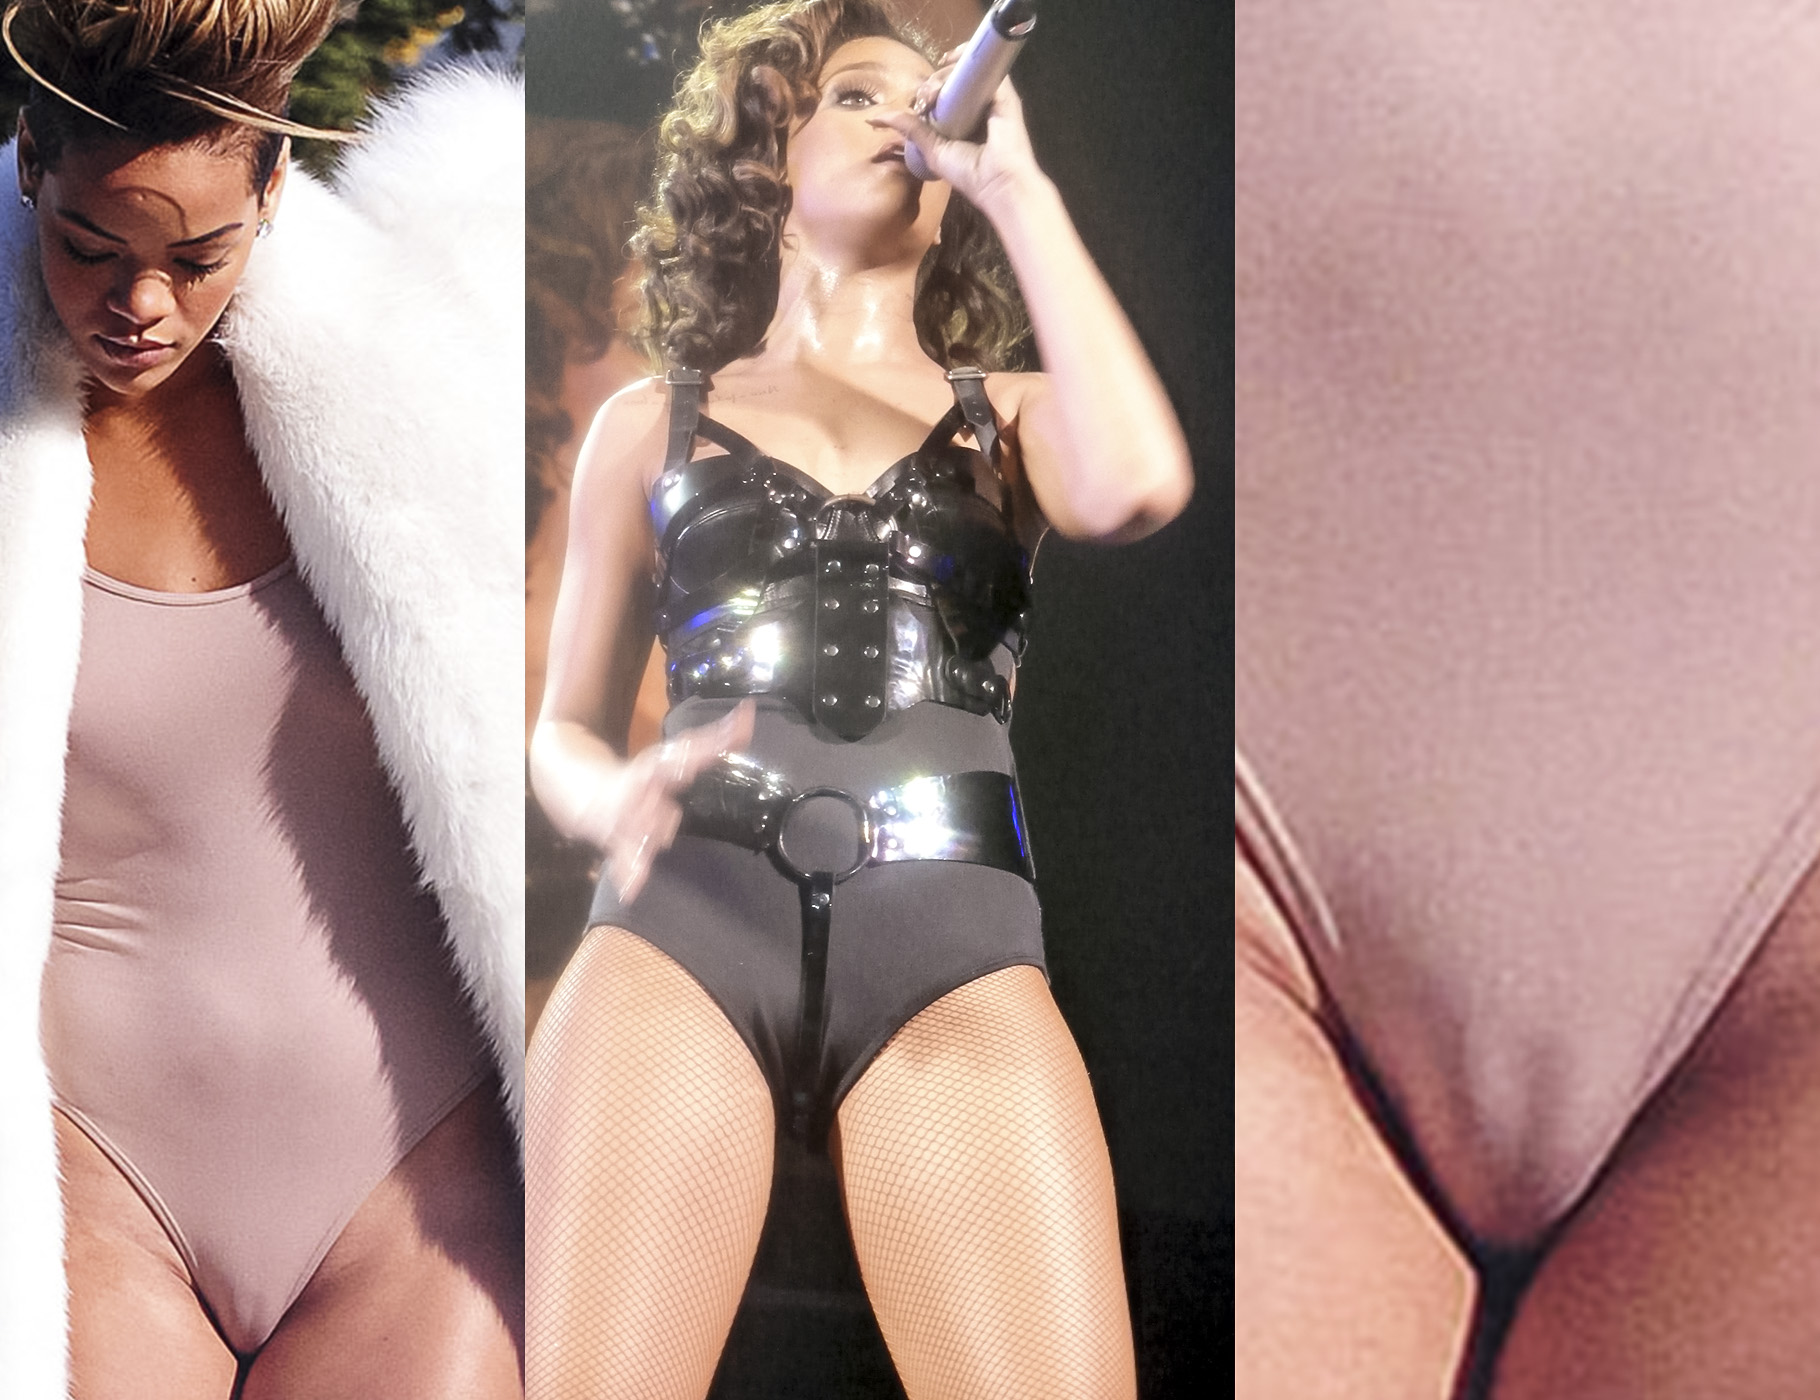 Rihanna camel toe - Rihanna cameltoe - Rihanna sexy | Hol...